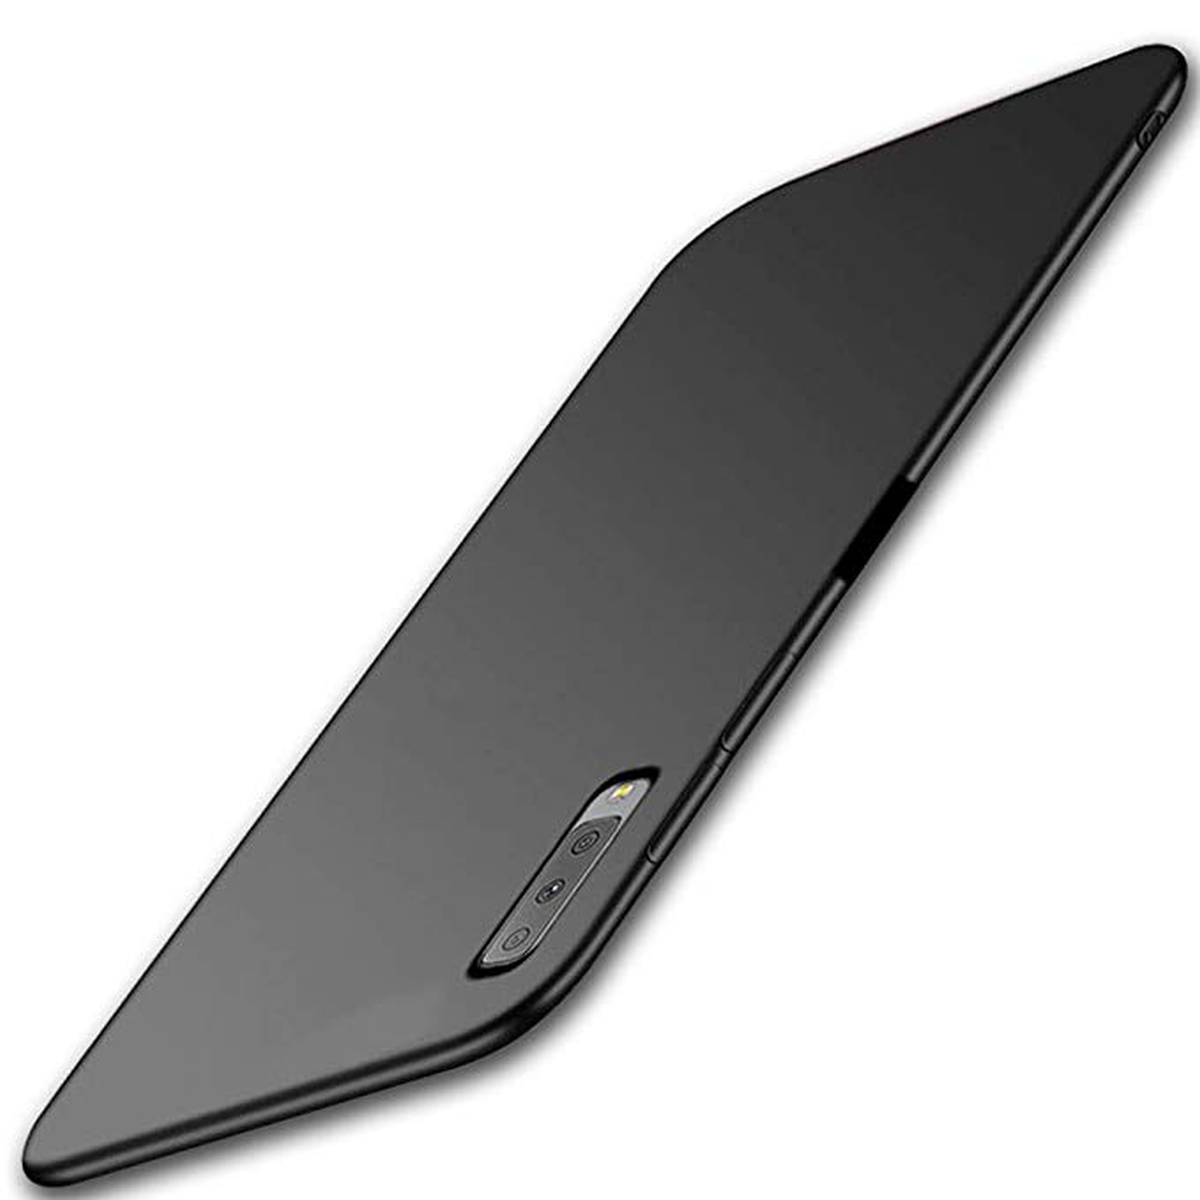 Samsung Galaxy A7 slim case